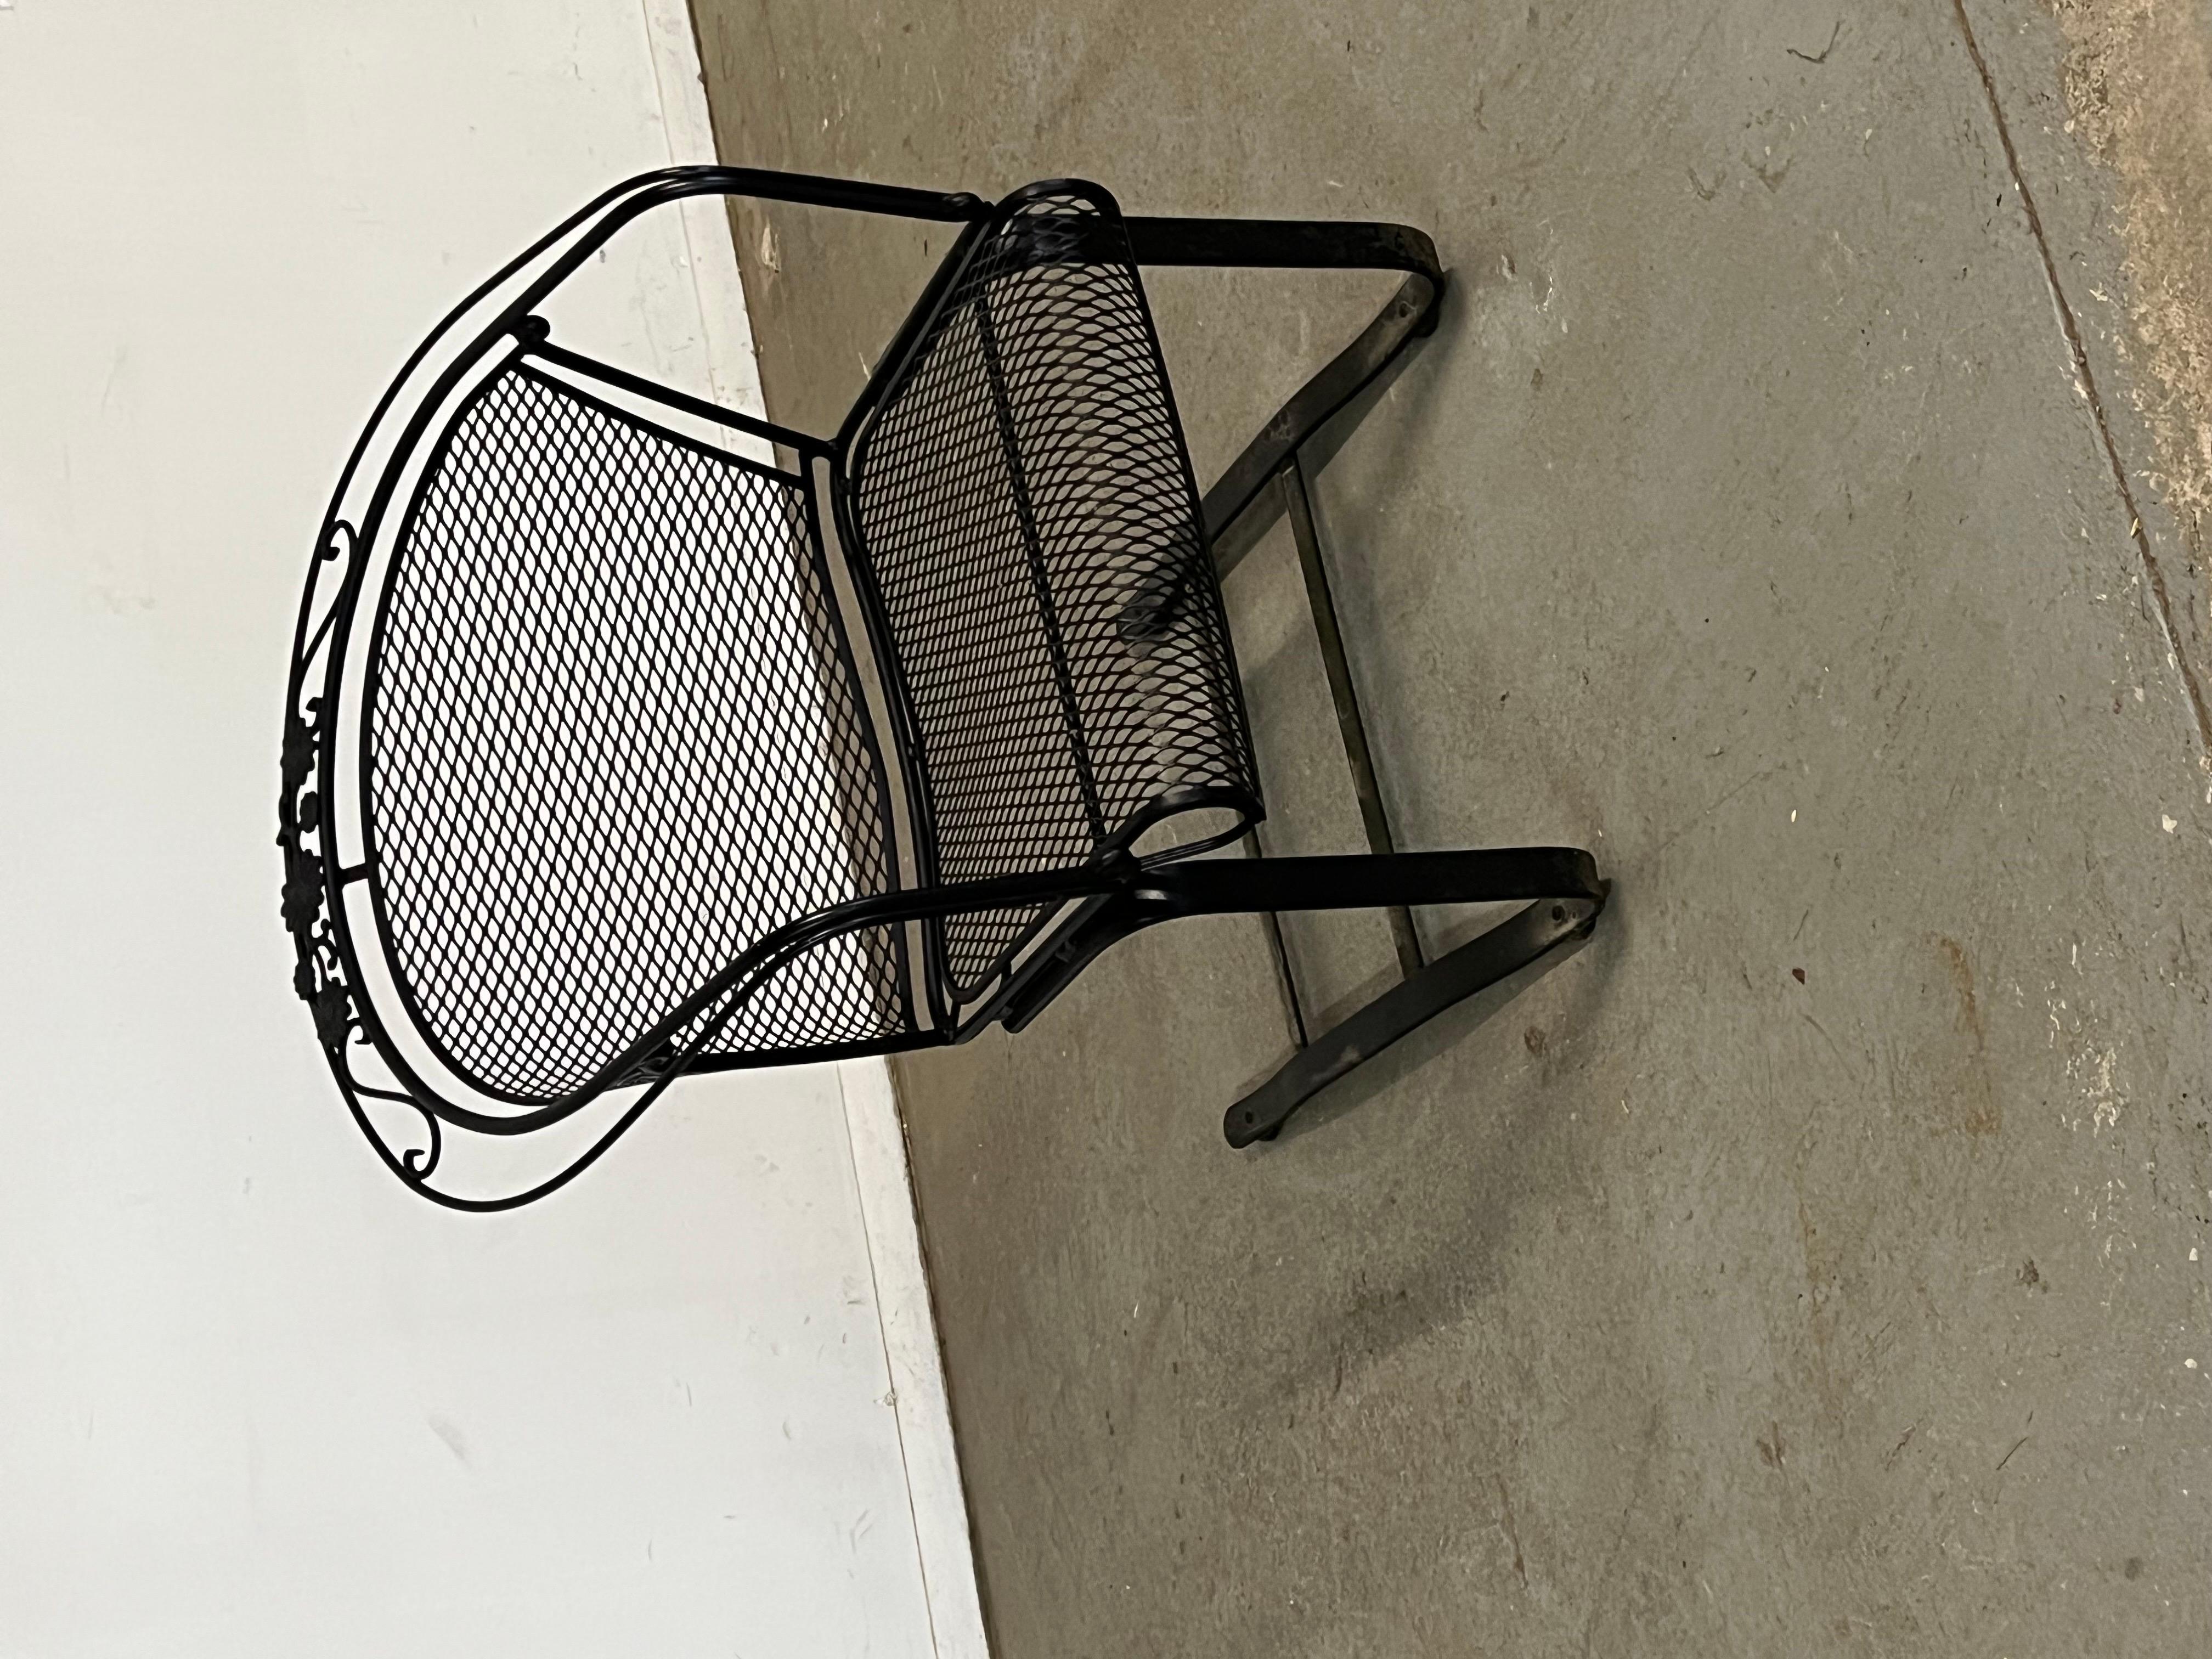 Vintage Mid-Century Salterini Curve Back Outdoor Cantilever/Springer Arm Chair
Nous vous proposons un fauteuil d'extérieur Cantilever/Springer à dossier incurvé de style Salterini (circa 1960's). Le fer forgé émaillé et tressé présente un motif